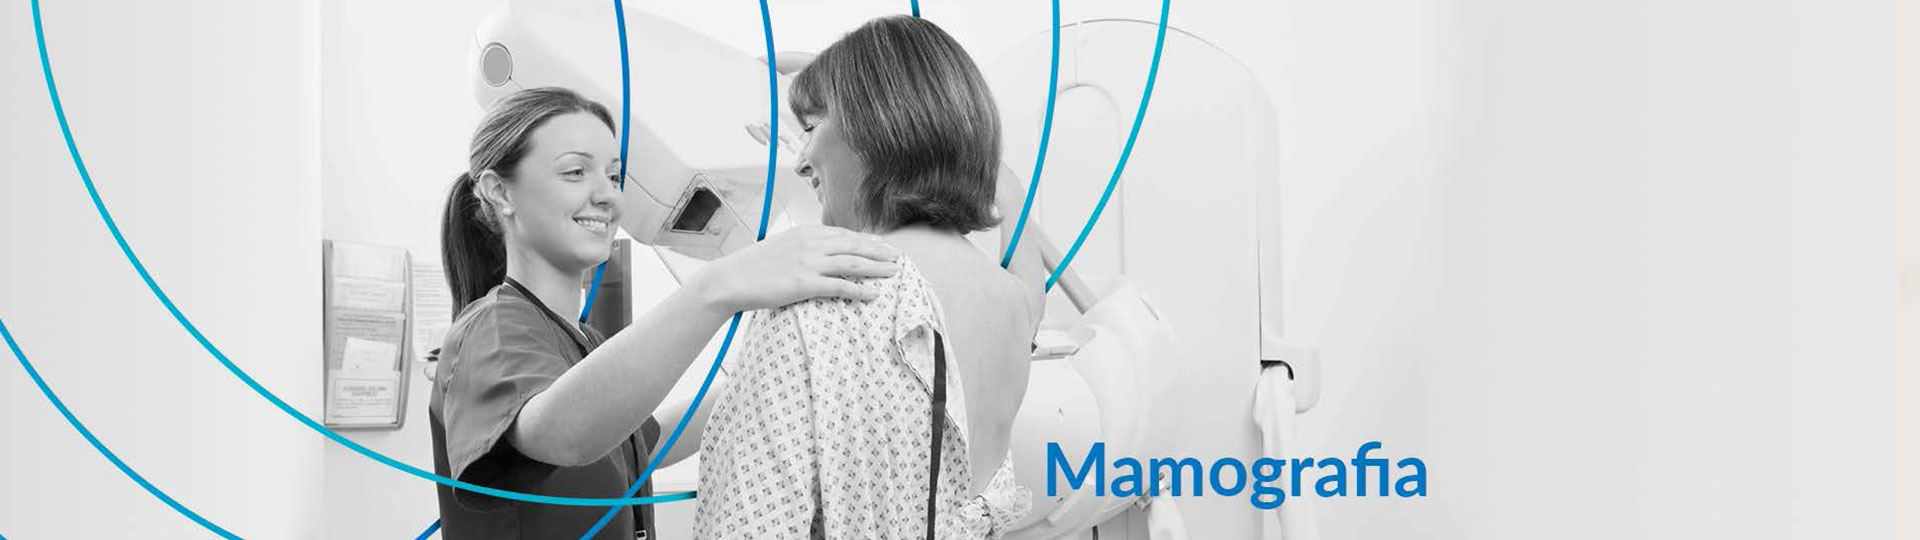 05-Mamografia